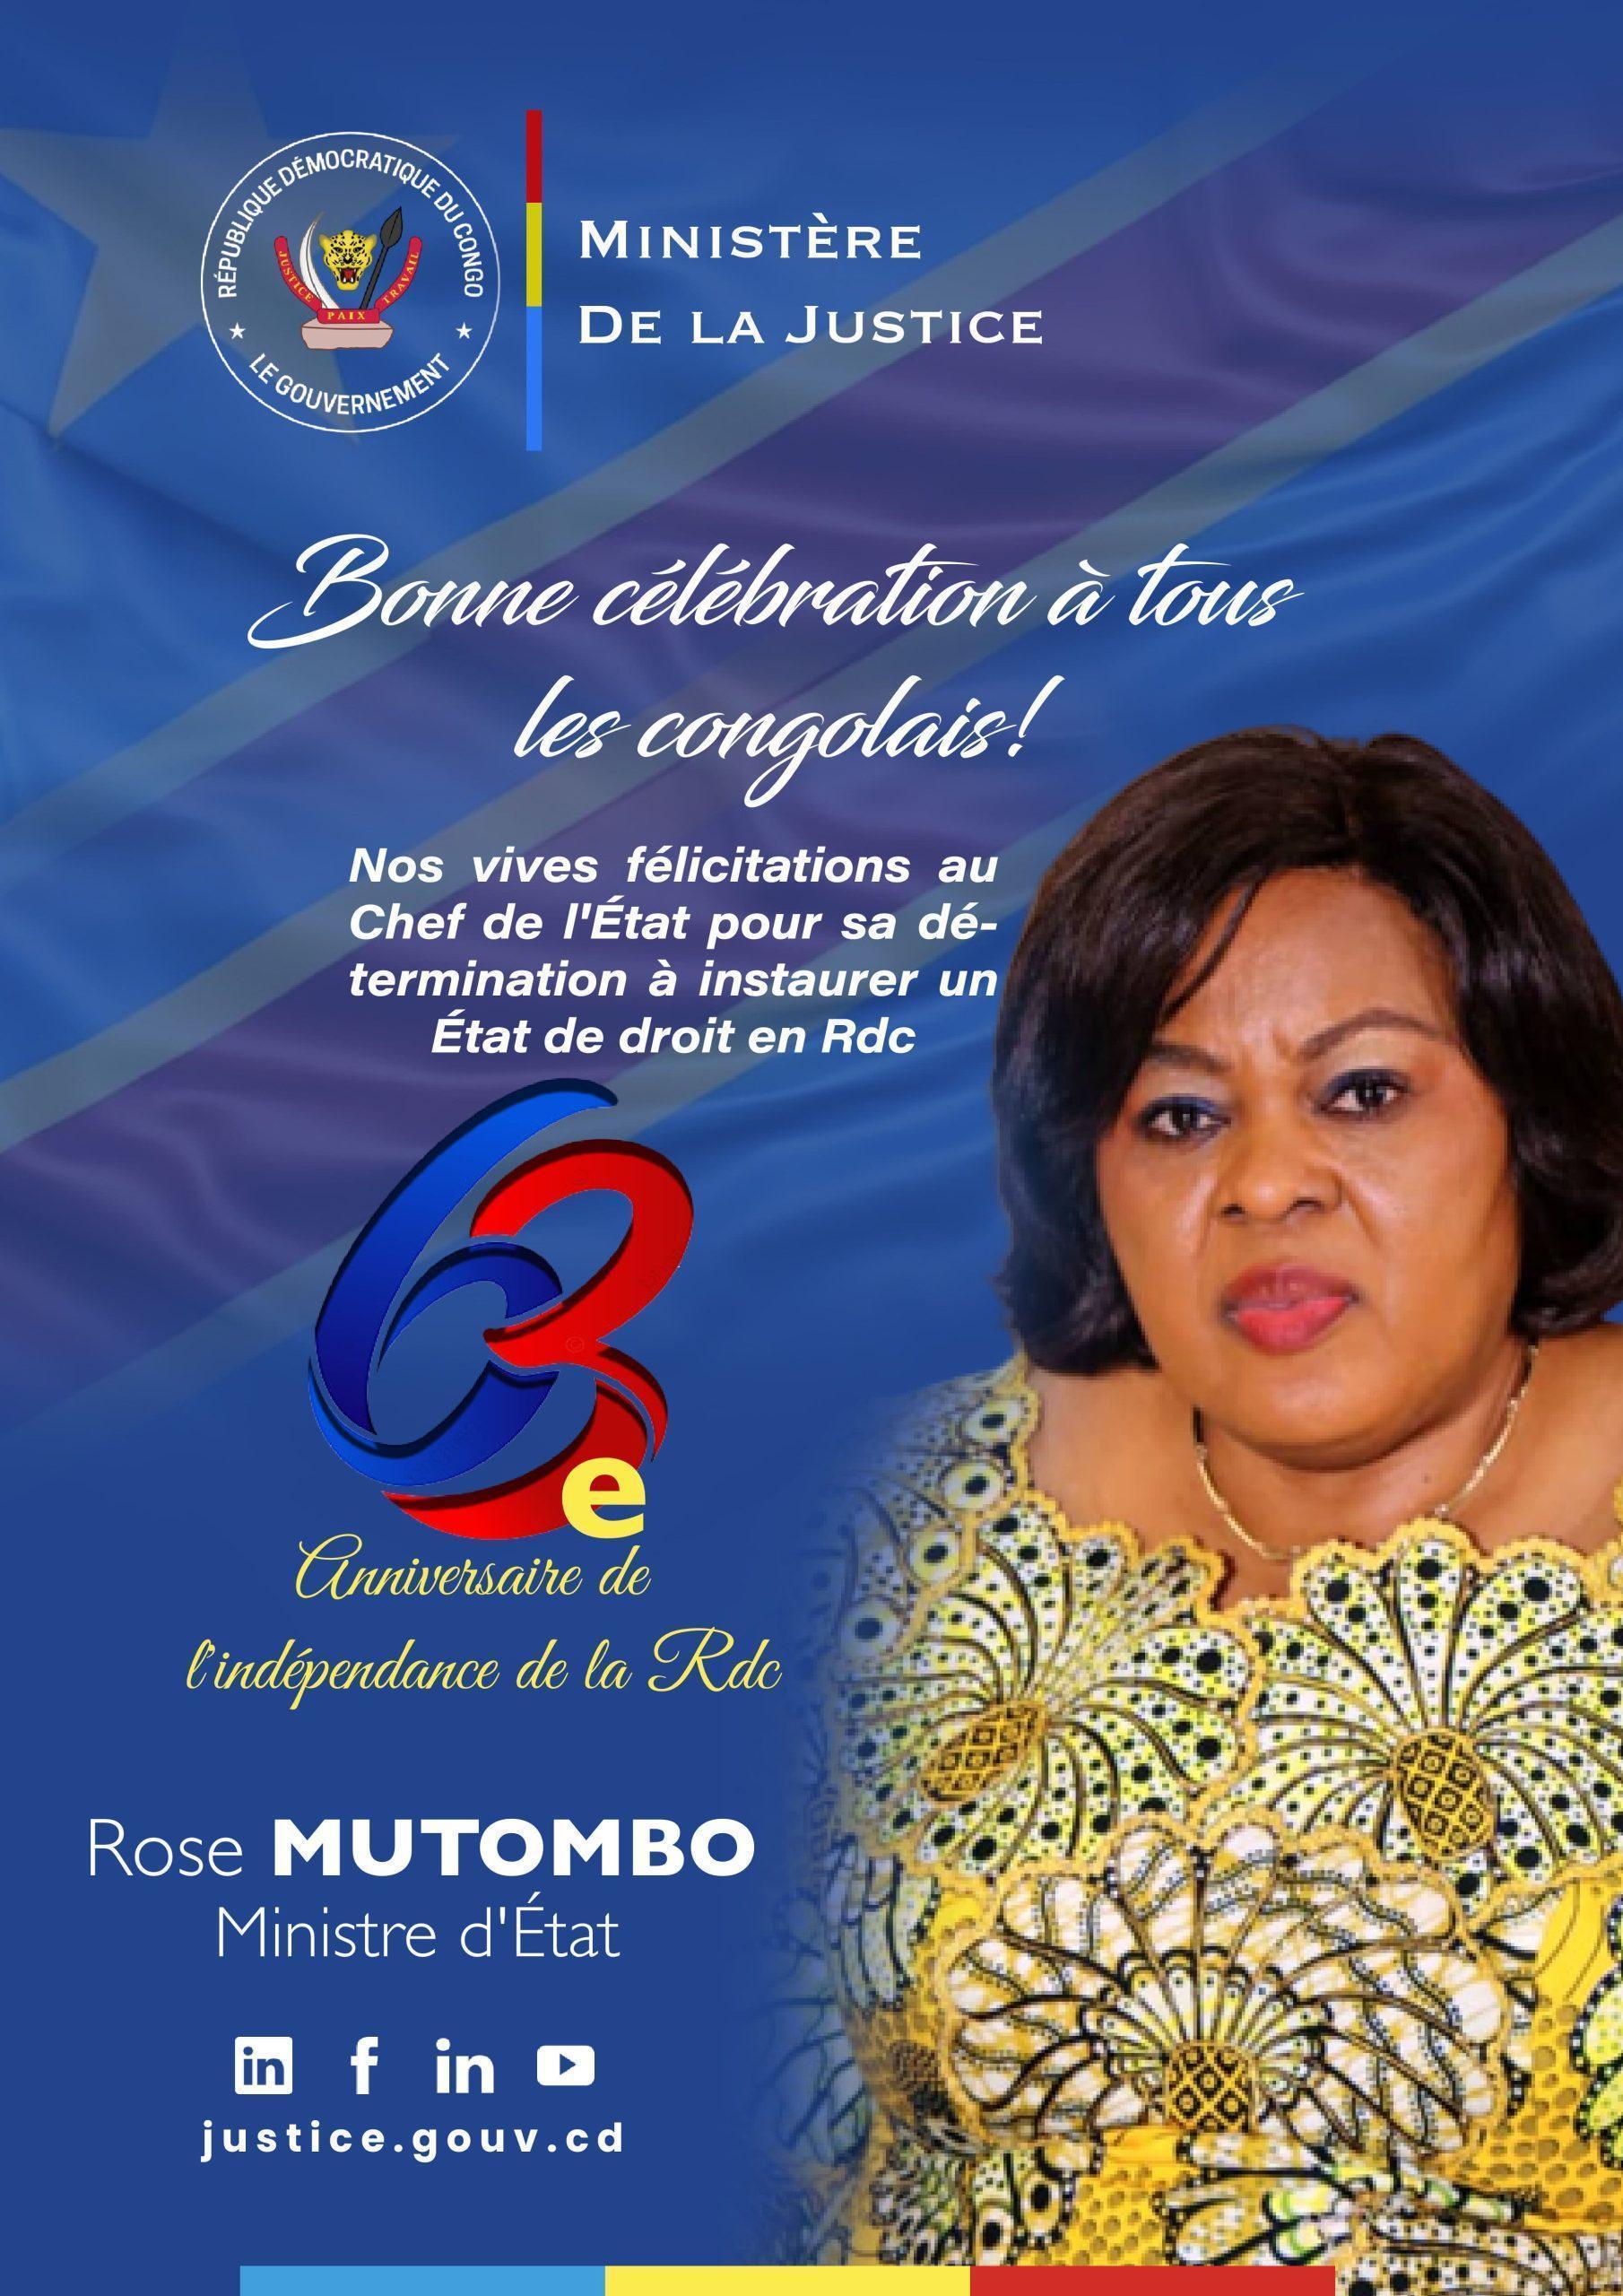 La ministre de la justice souhaite une joyeuse fête de l’indépendance pour un Congo nouveau d’État de droit